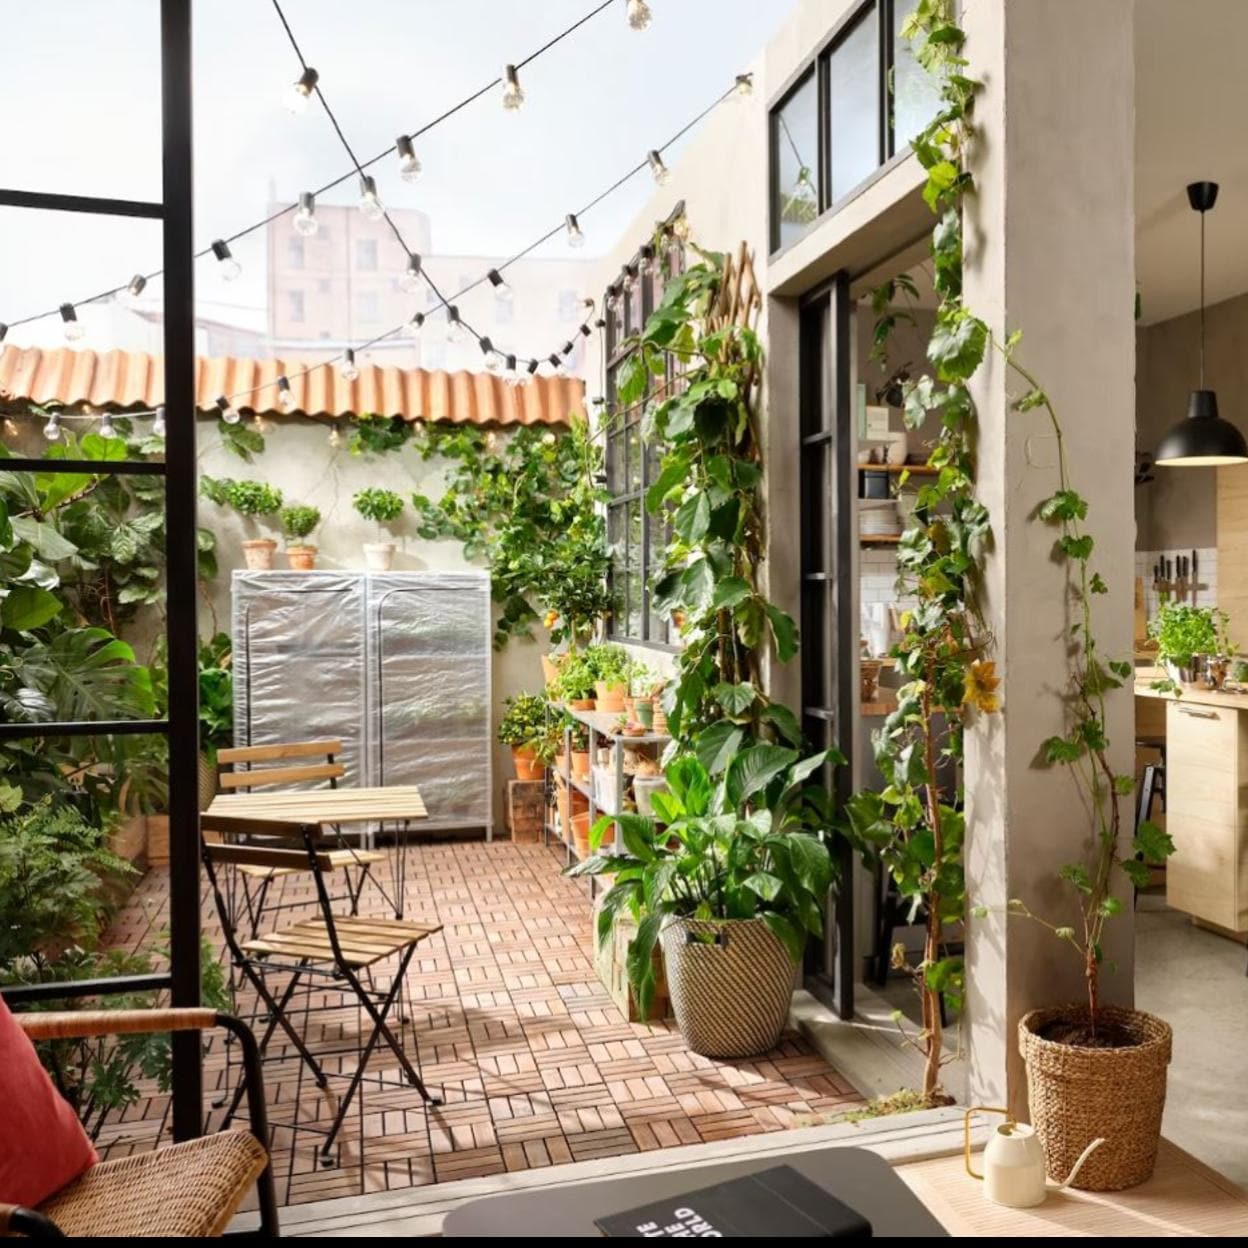 Cómo diseñar una cocina de exterior en el jardín - IKEA